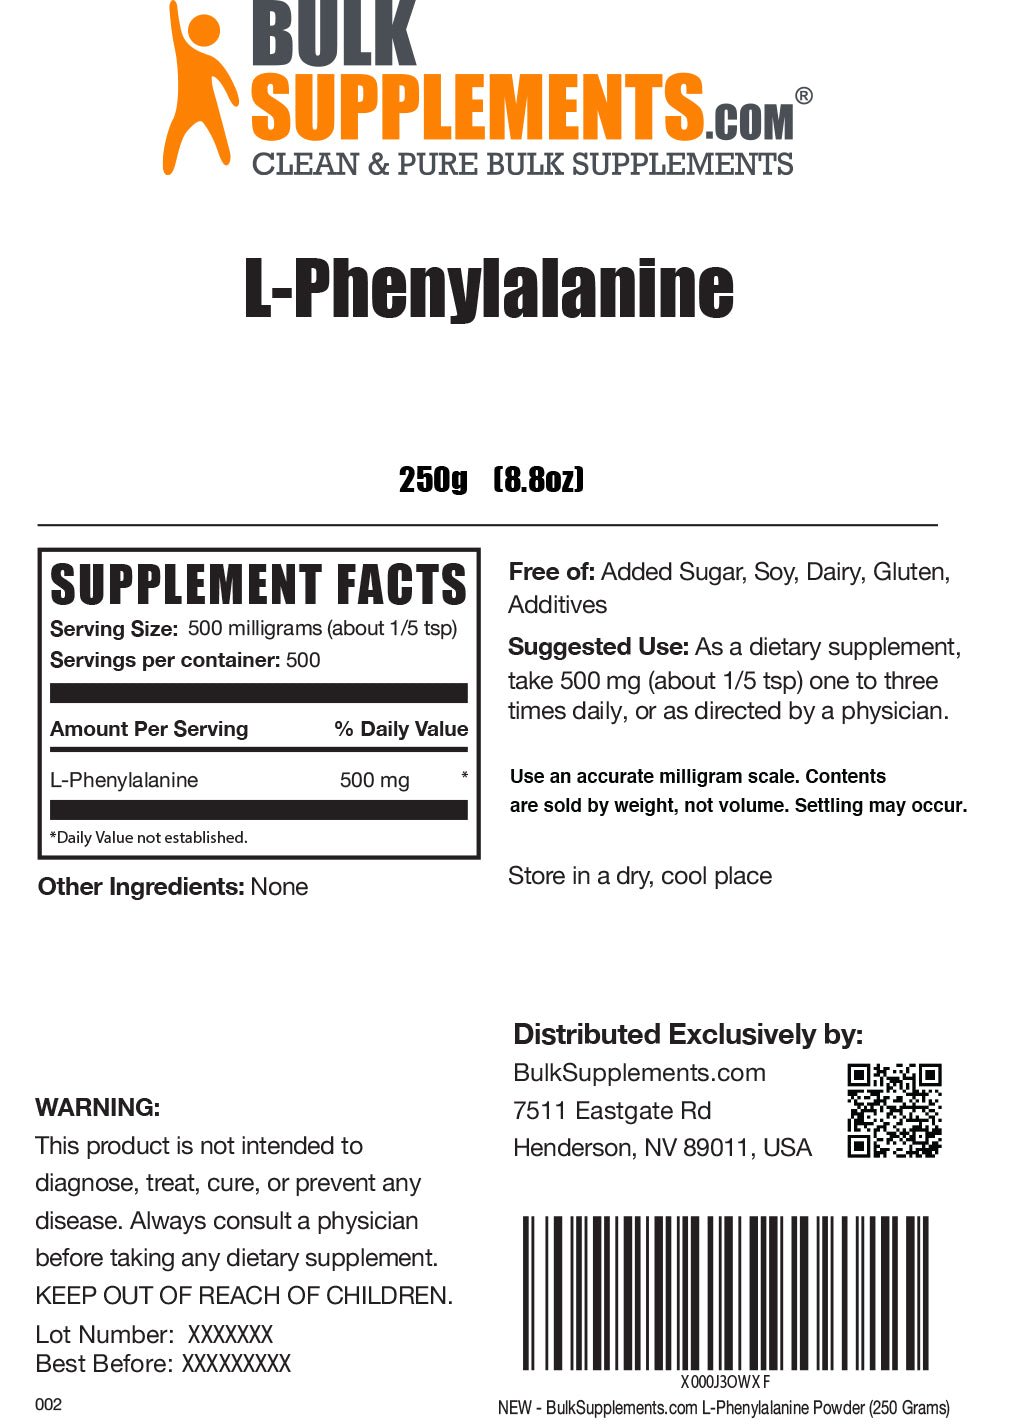 L-Phenylalanine powder label 250g